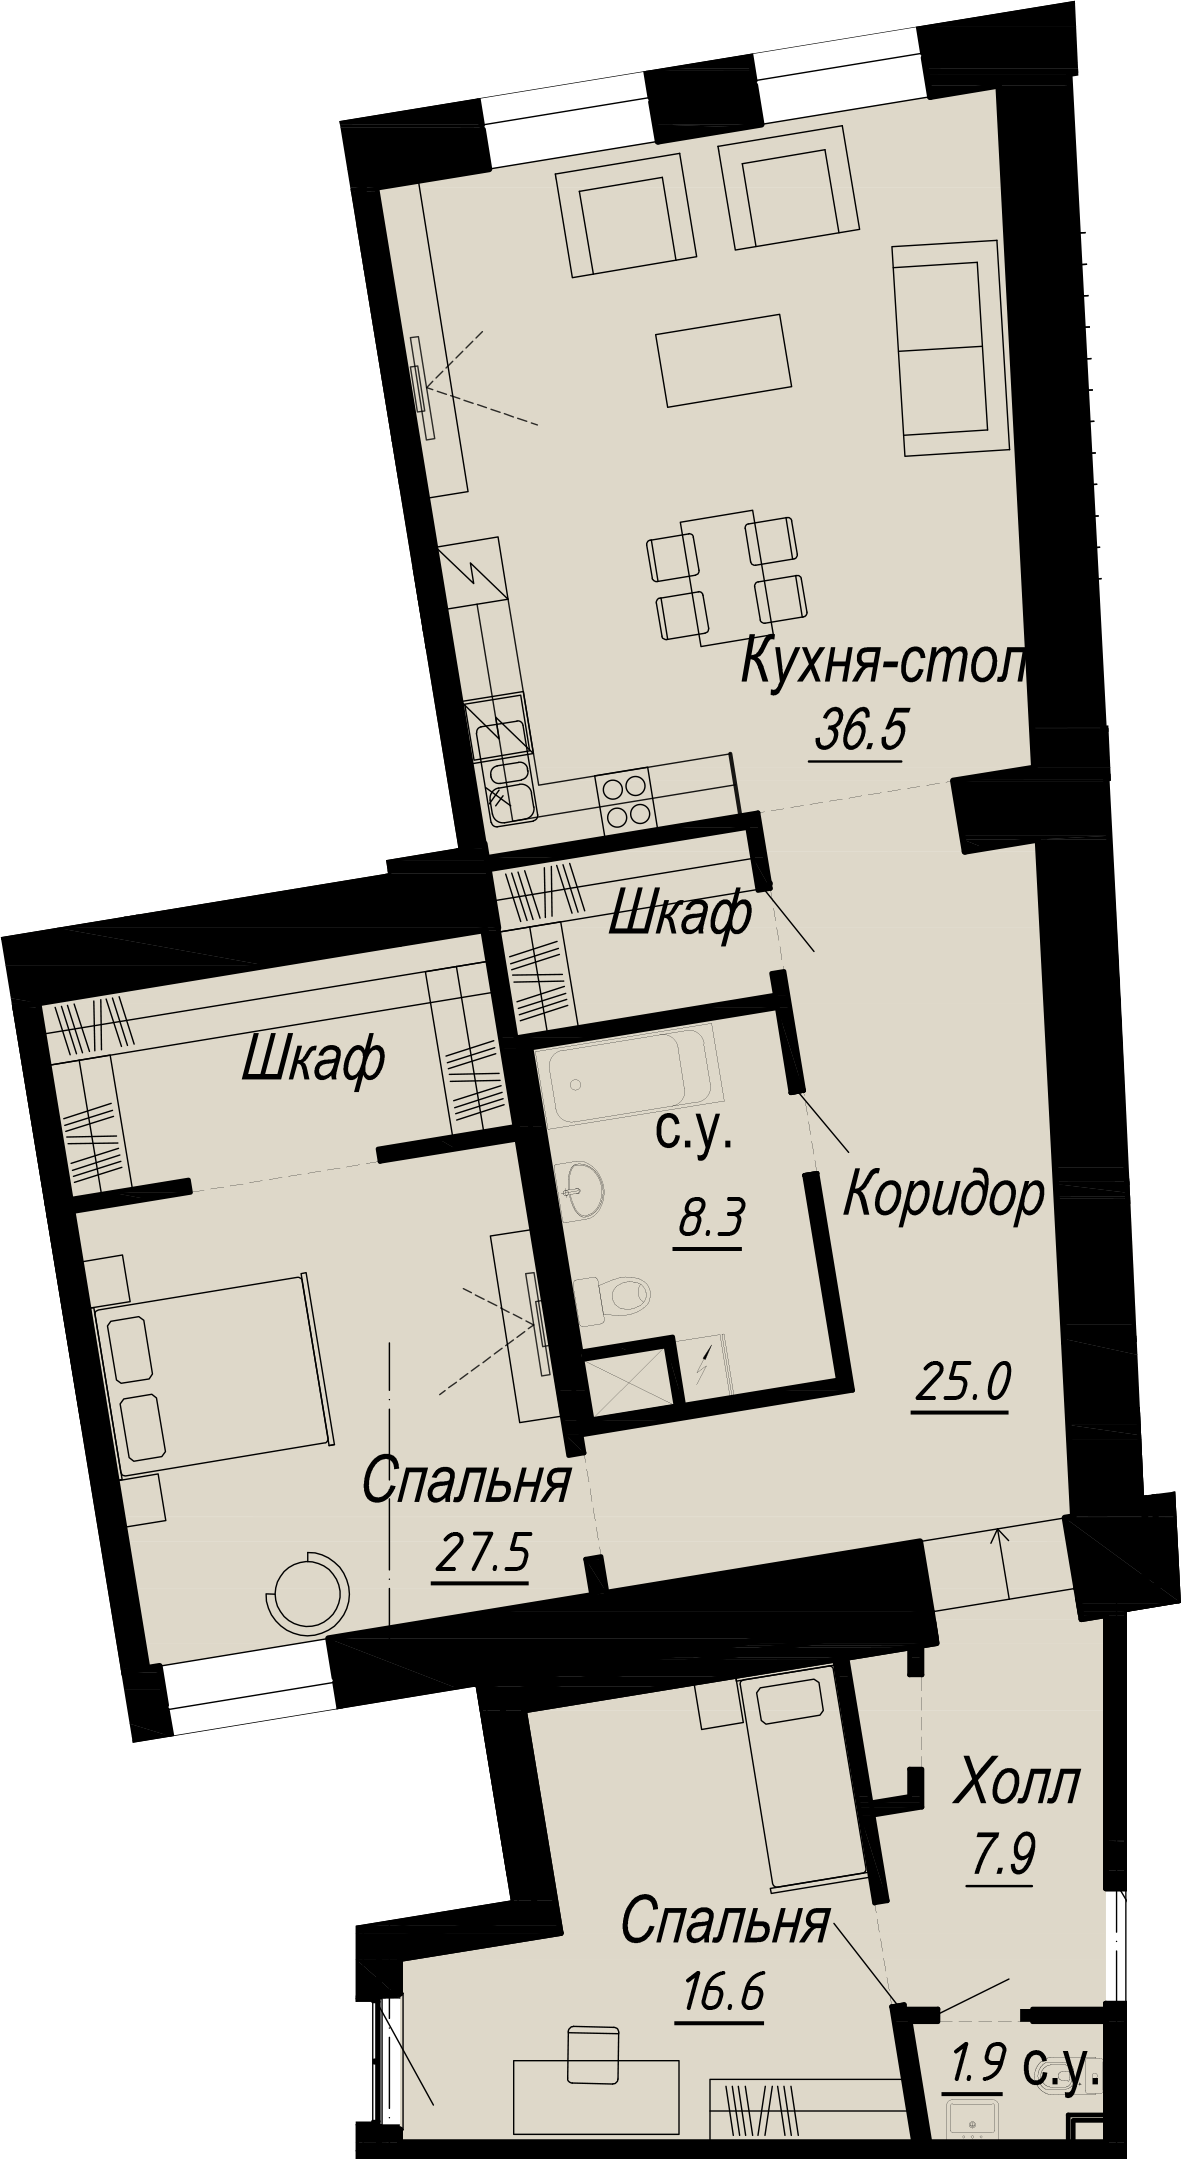 2-комнатная квартира  №18-5 в Meltzer Hall: 125.96 м², этаж 5 - купить в Санкт-Петербурге